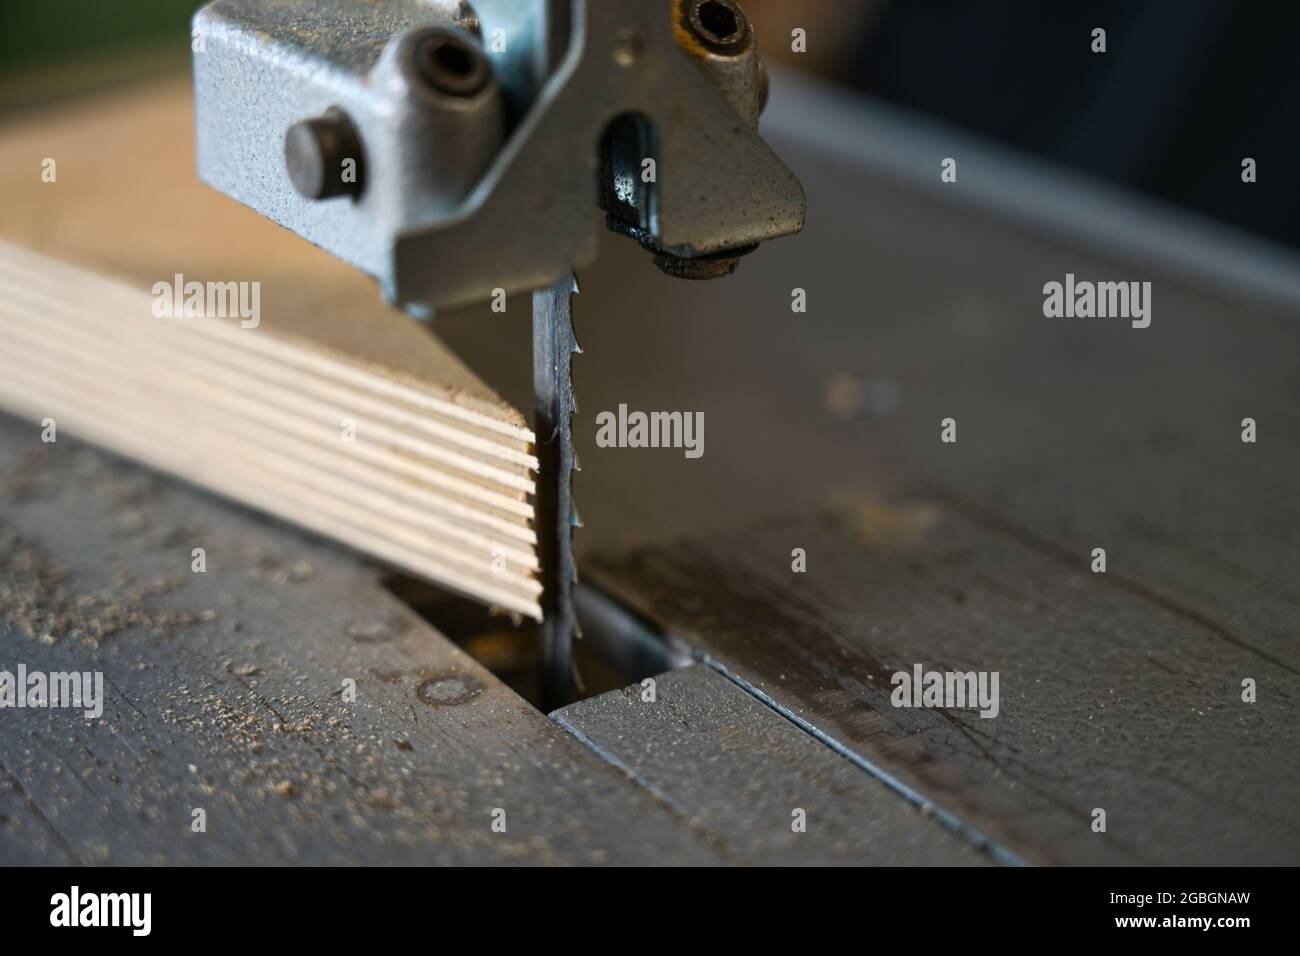 Detail des Sägeblatts einer elektrischen Bandsäge und einer Multiplex-Holzplatte in einer Werkstatt, Kopierraum, Nahaufnahme mit ausgewähltem Fokus, sehr enge Tiefe o Stockfoto